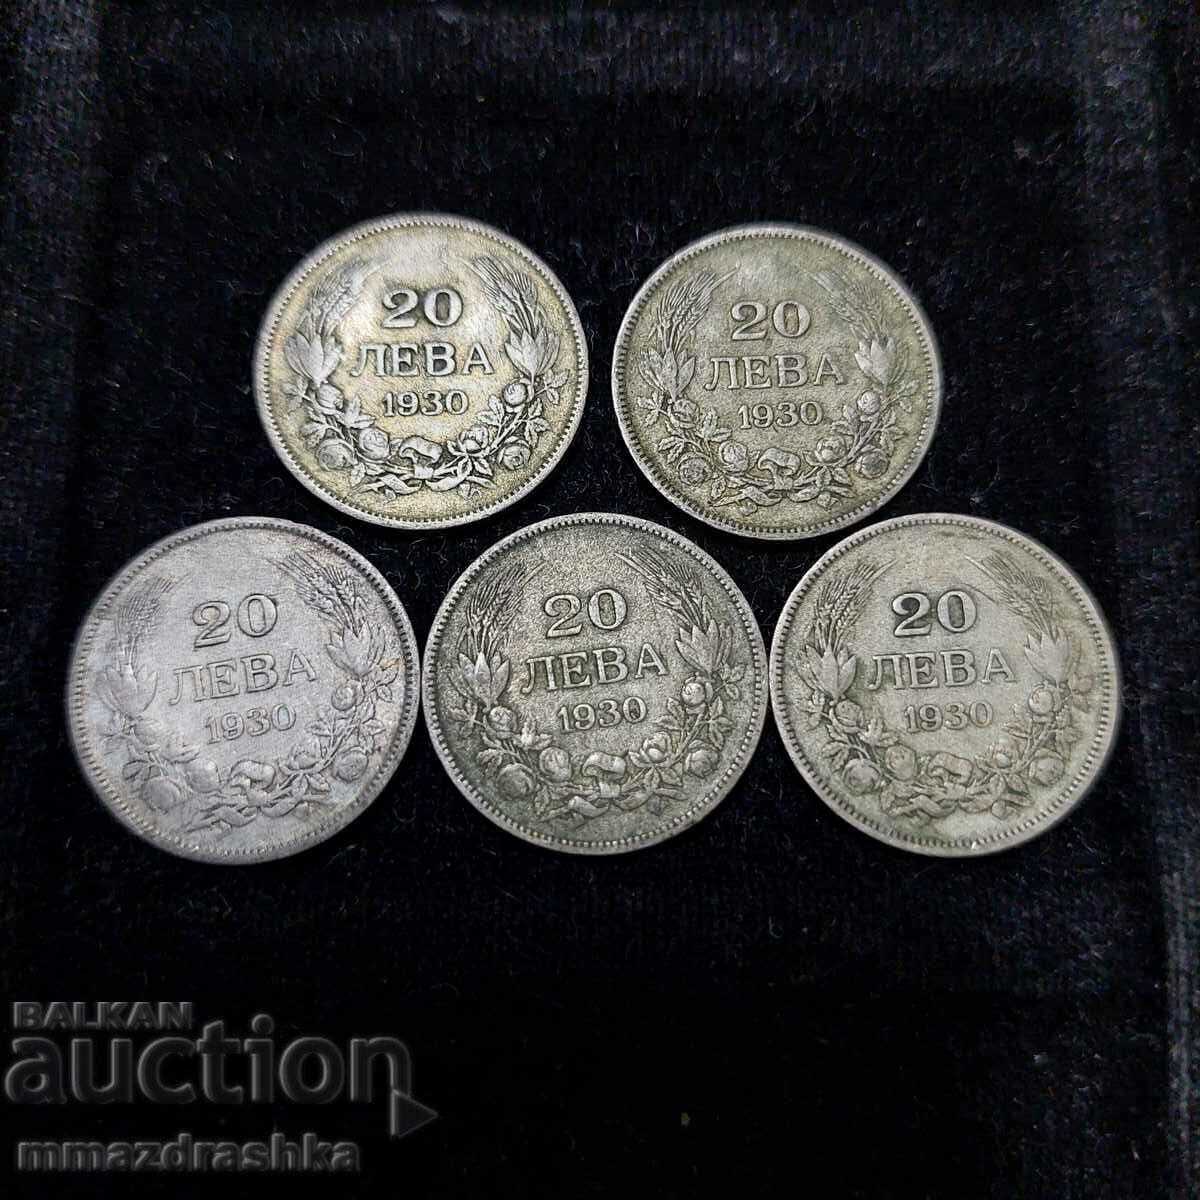 Ασημένια νομίσματα των βασιλικών χρόνων